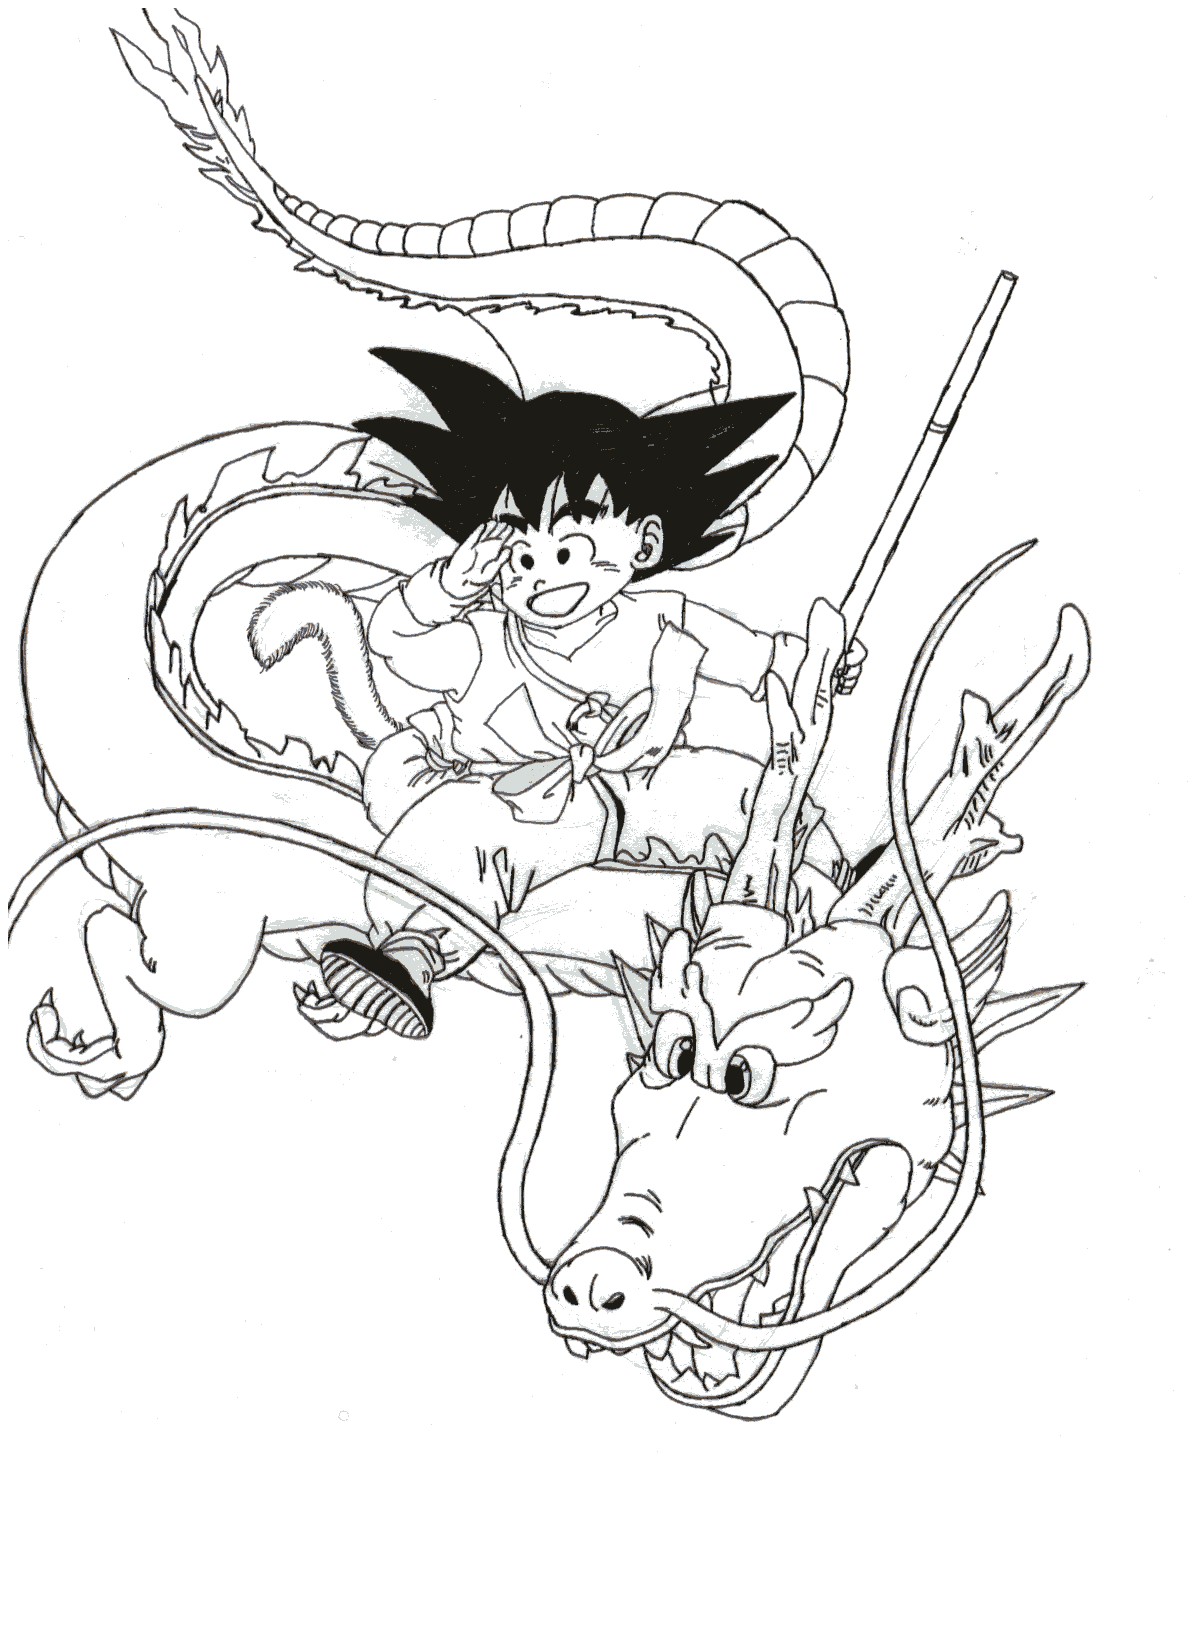 Goku Riding Dragon by Triss